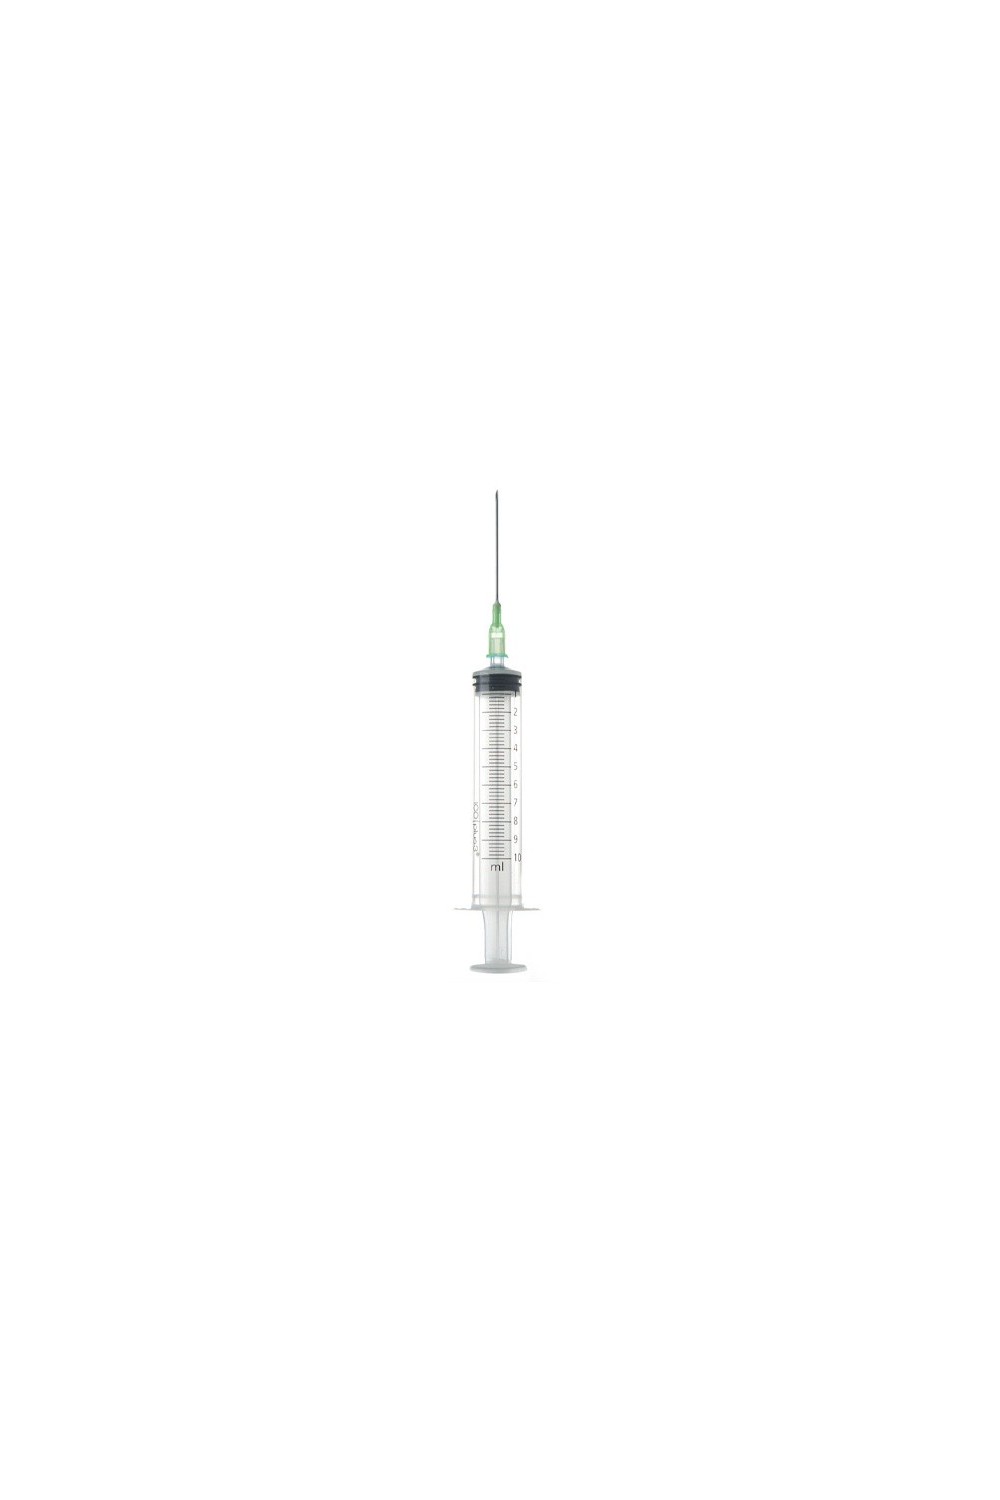 Ico Syringe With Needle 0,8x40 10ml G21 11/2